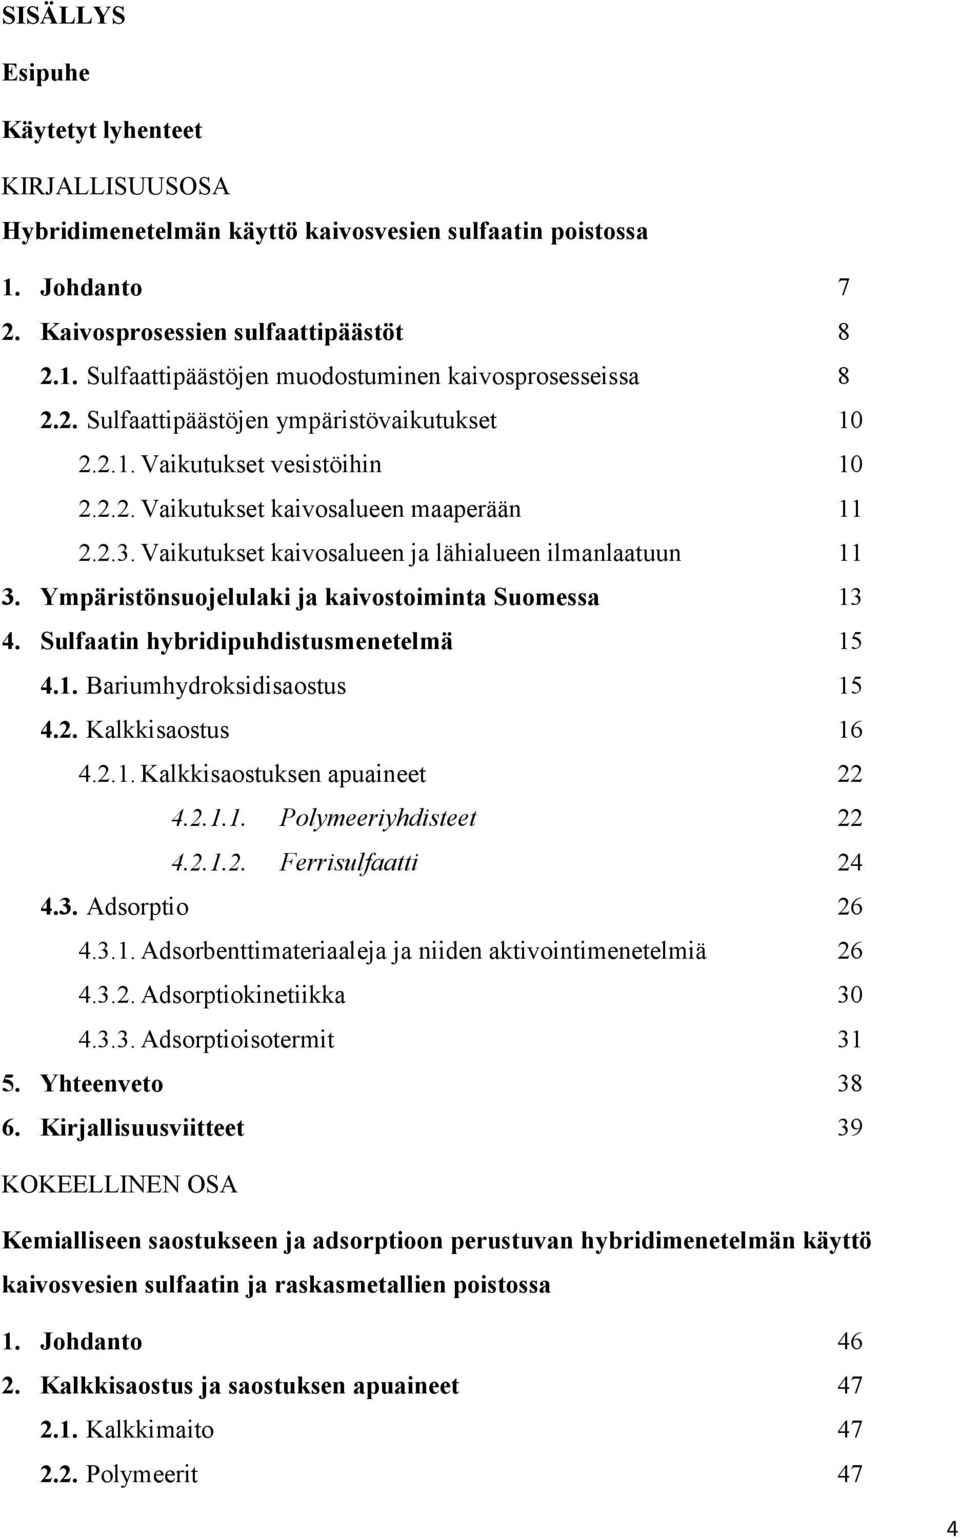 Ympäristönsuojelulaki ja kaivostoiminta Suomessa 13 4. Sulfaatin hybridipuhdistusmenetelmä 15 4.1. Bariumhydroksidisaostus 15 4.2. Kalkkisaostus 16 4.2.1. Kalkkisaostuksen apuaineet 22 4.2.1.1. Polymeeriyhdisteet 22 4.